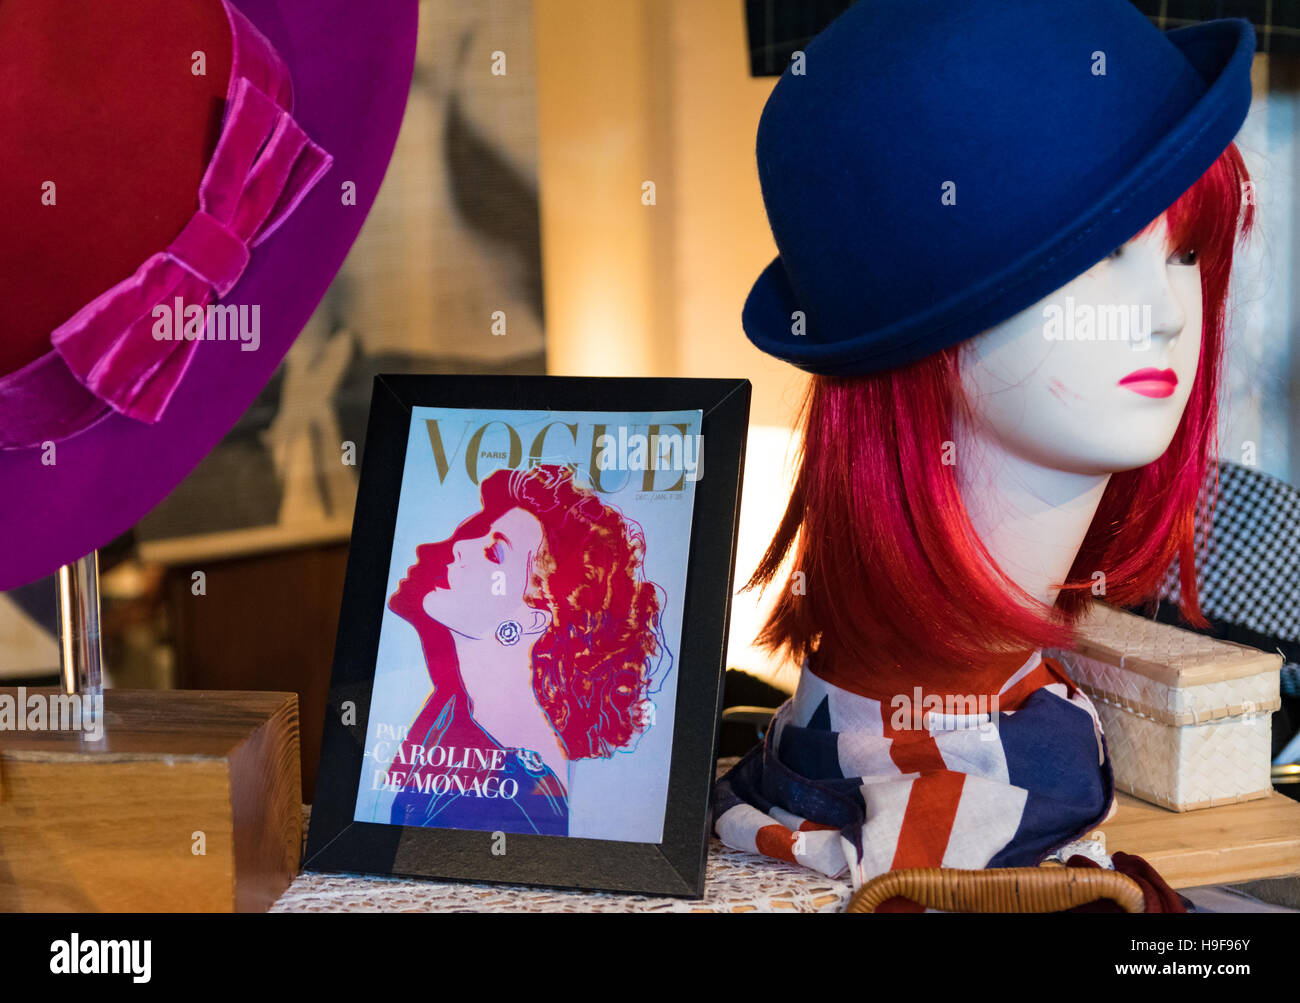 Milan, Italie - 1 novembre 2015 : les chapeaux de femmes dans la région de old fashioned sont exposés dans un marché vintage. Banque D'Images